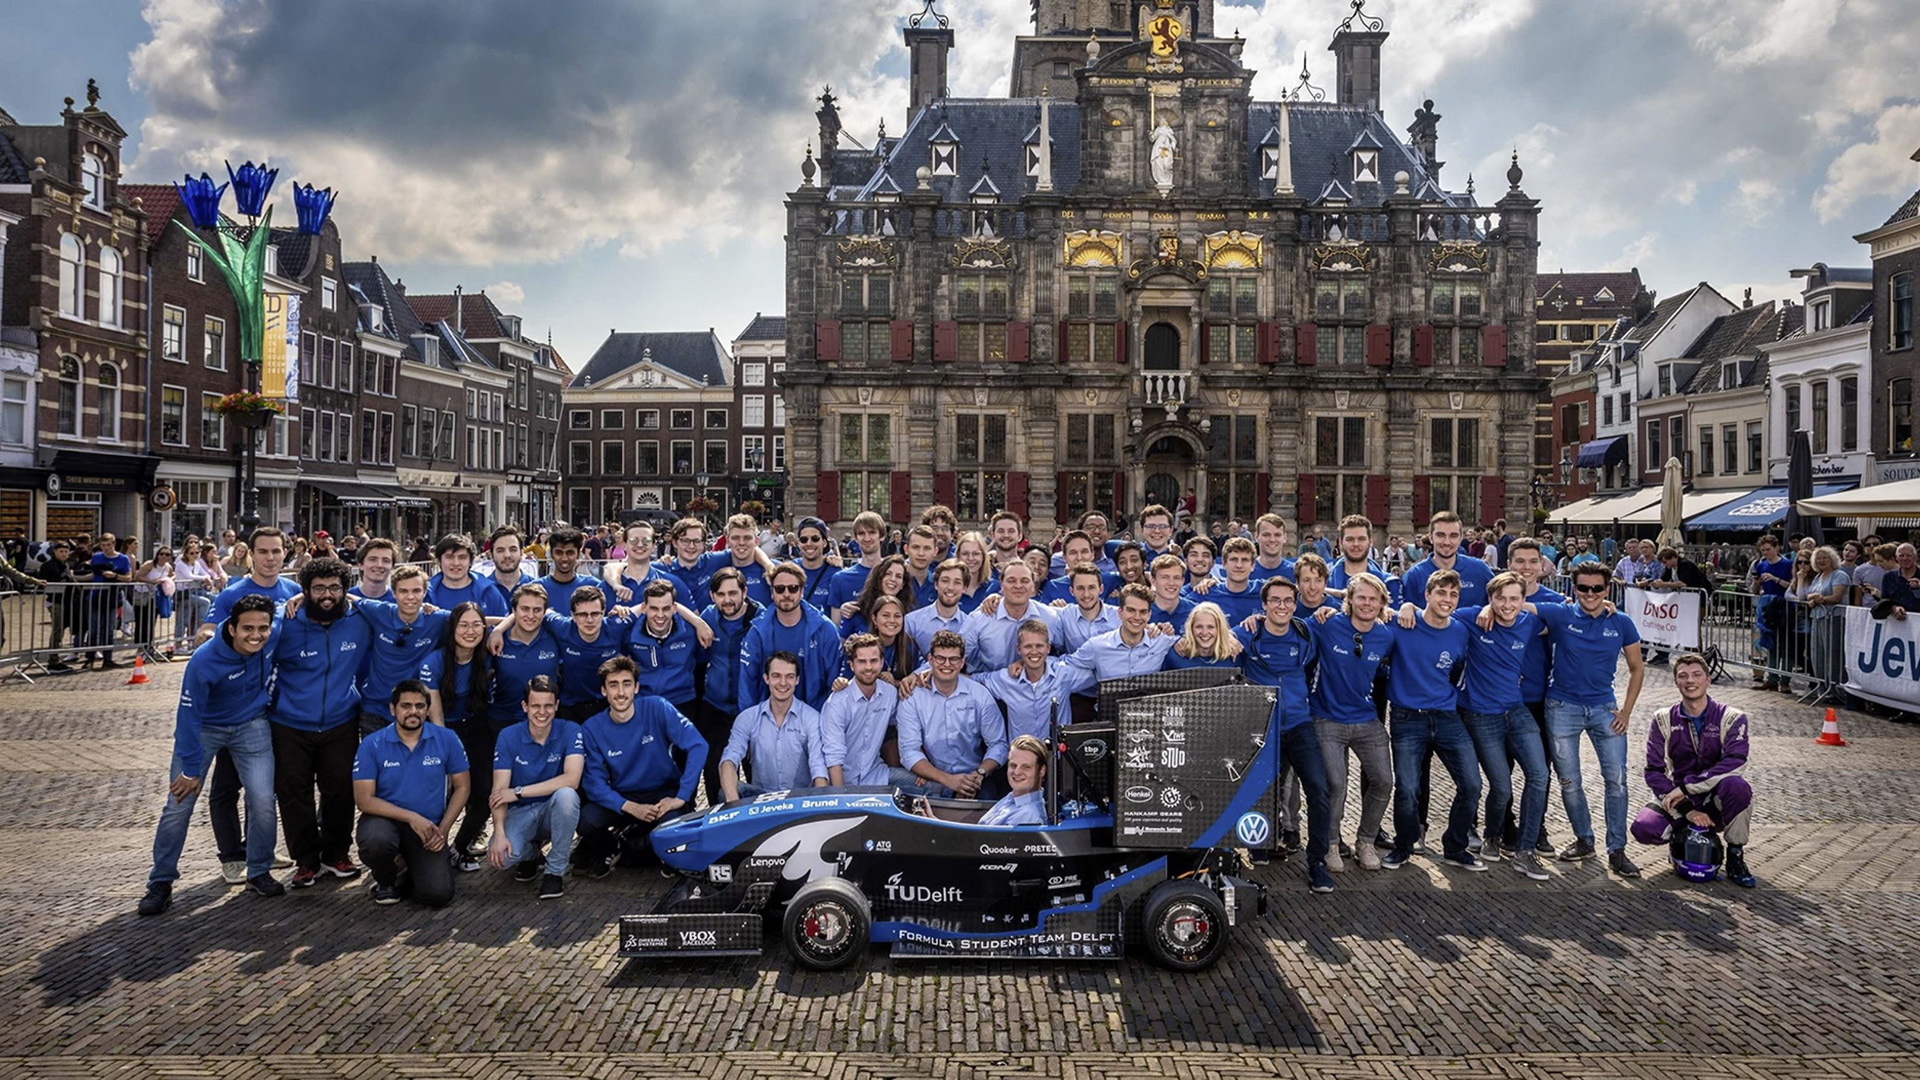 L’équipe TU Delft avec sa voiture de course de type Formule